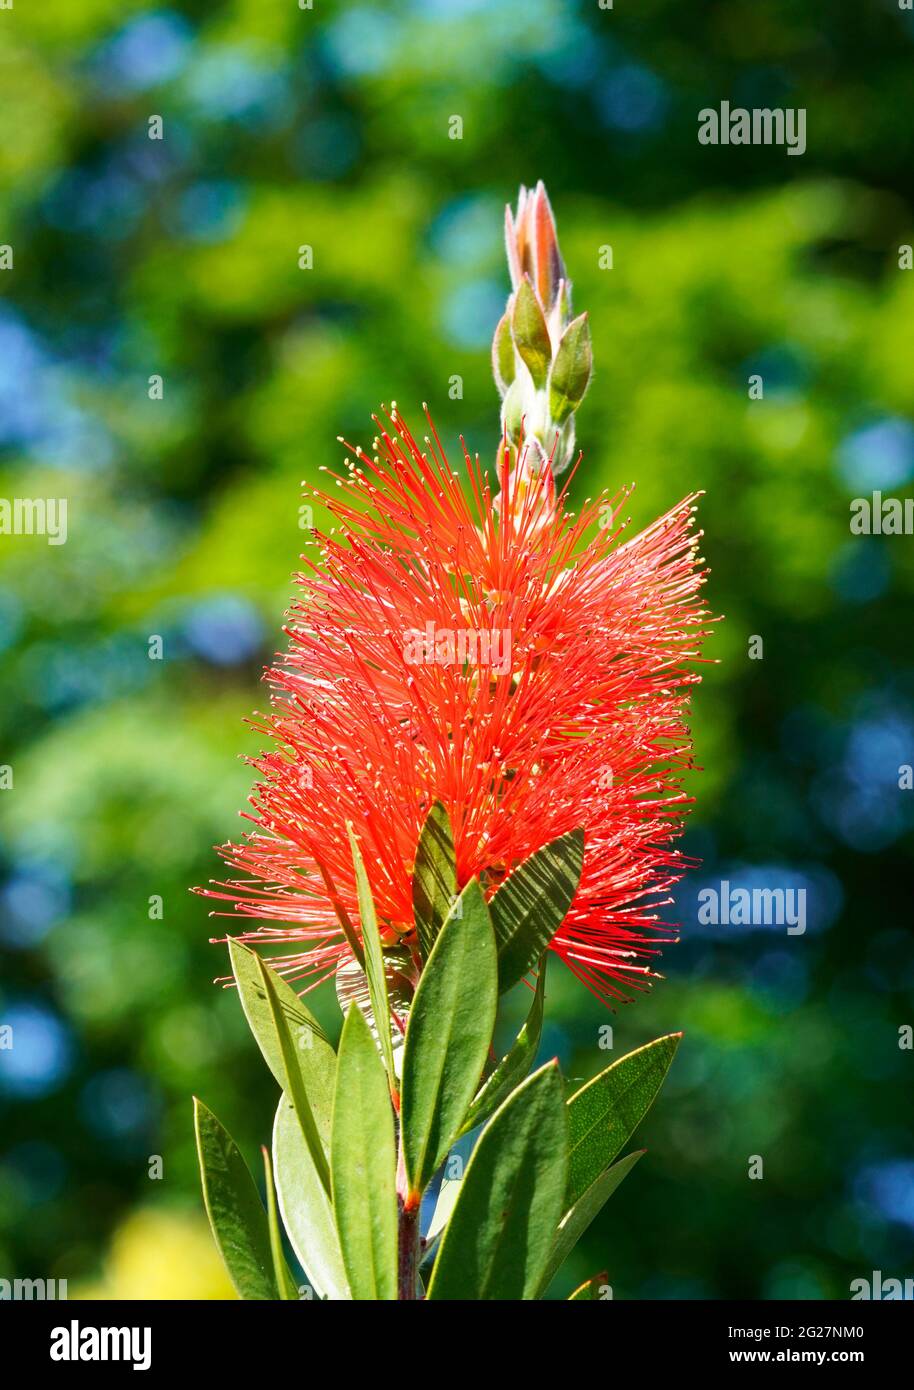 Carmine-Flaschenreiniger, Callistemon citrinus. Nahaufnahme einer exotischen roten Blume. Stockfoto